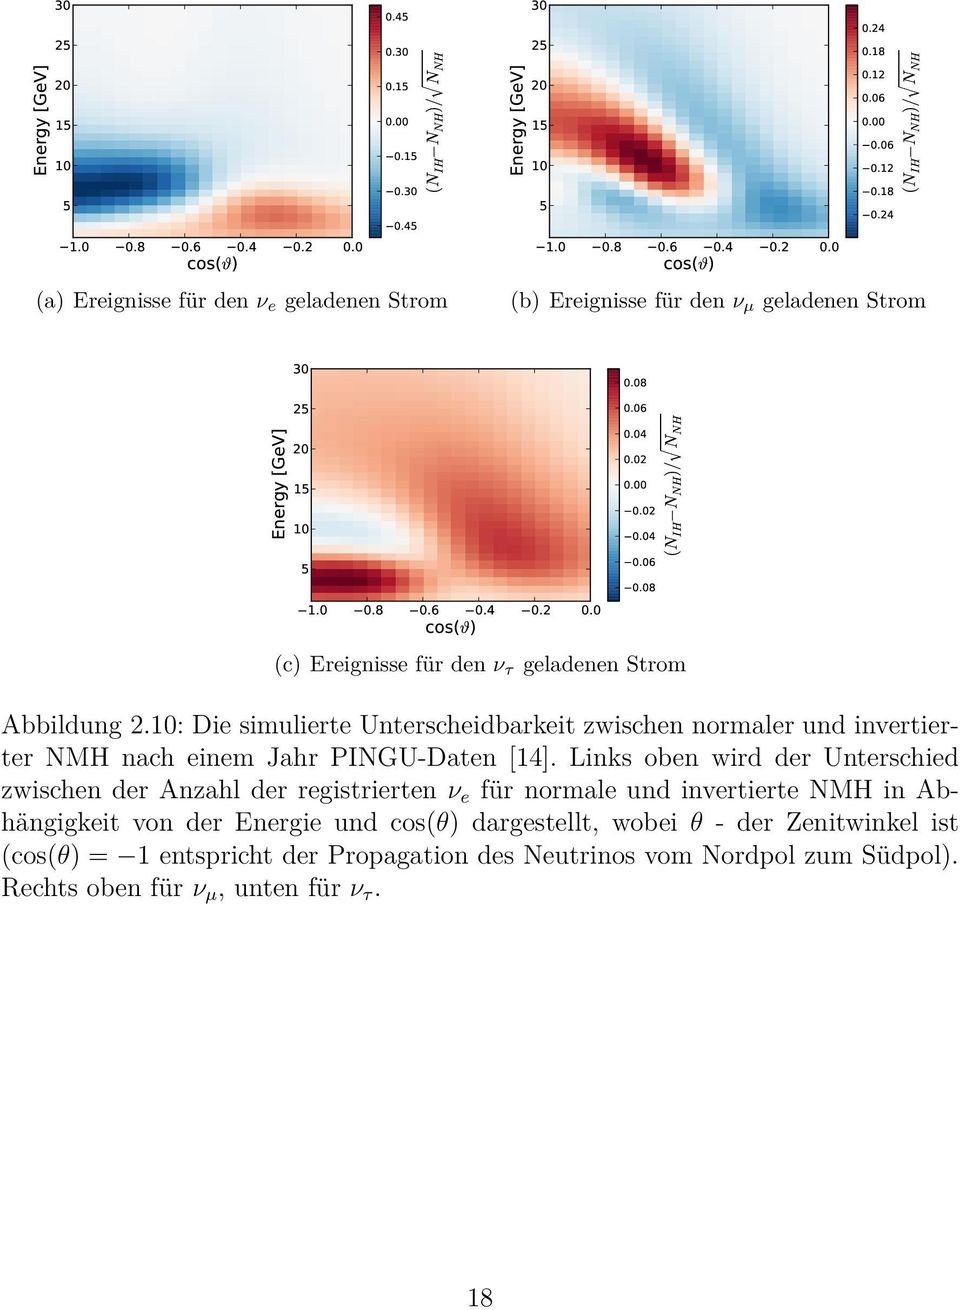 10: Die simulierte Unterscheidbarkeit zwischen normaler und invertierter NMH nach einem Jahr PINGU-Daten [14].